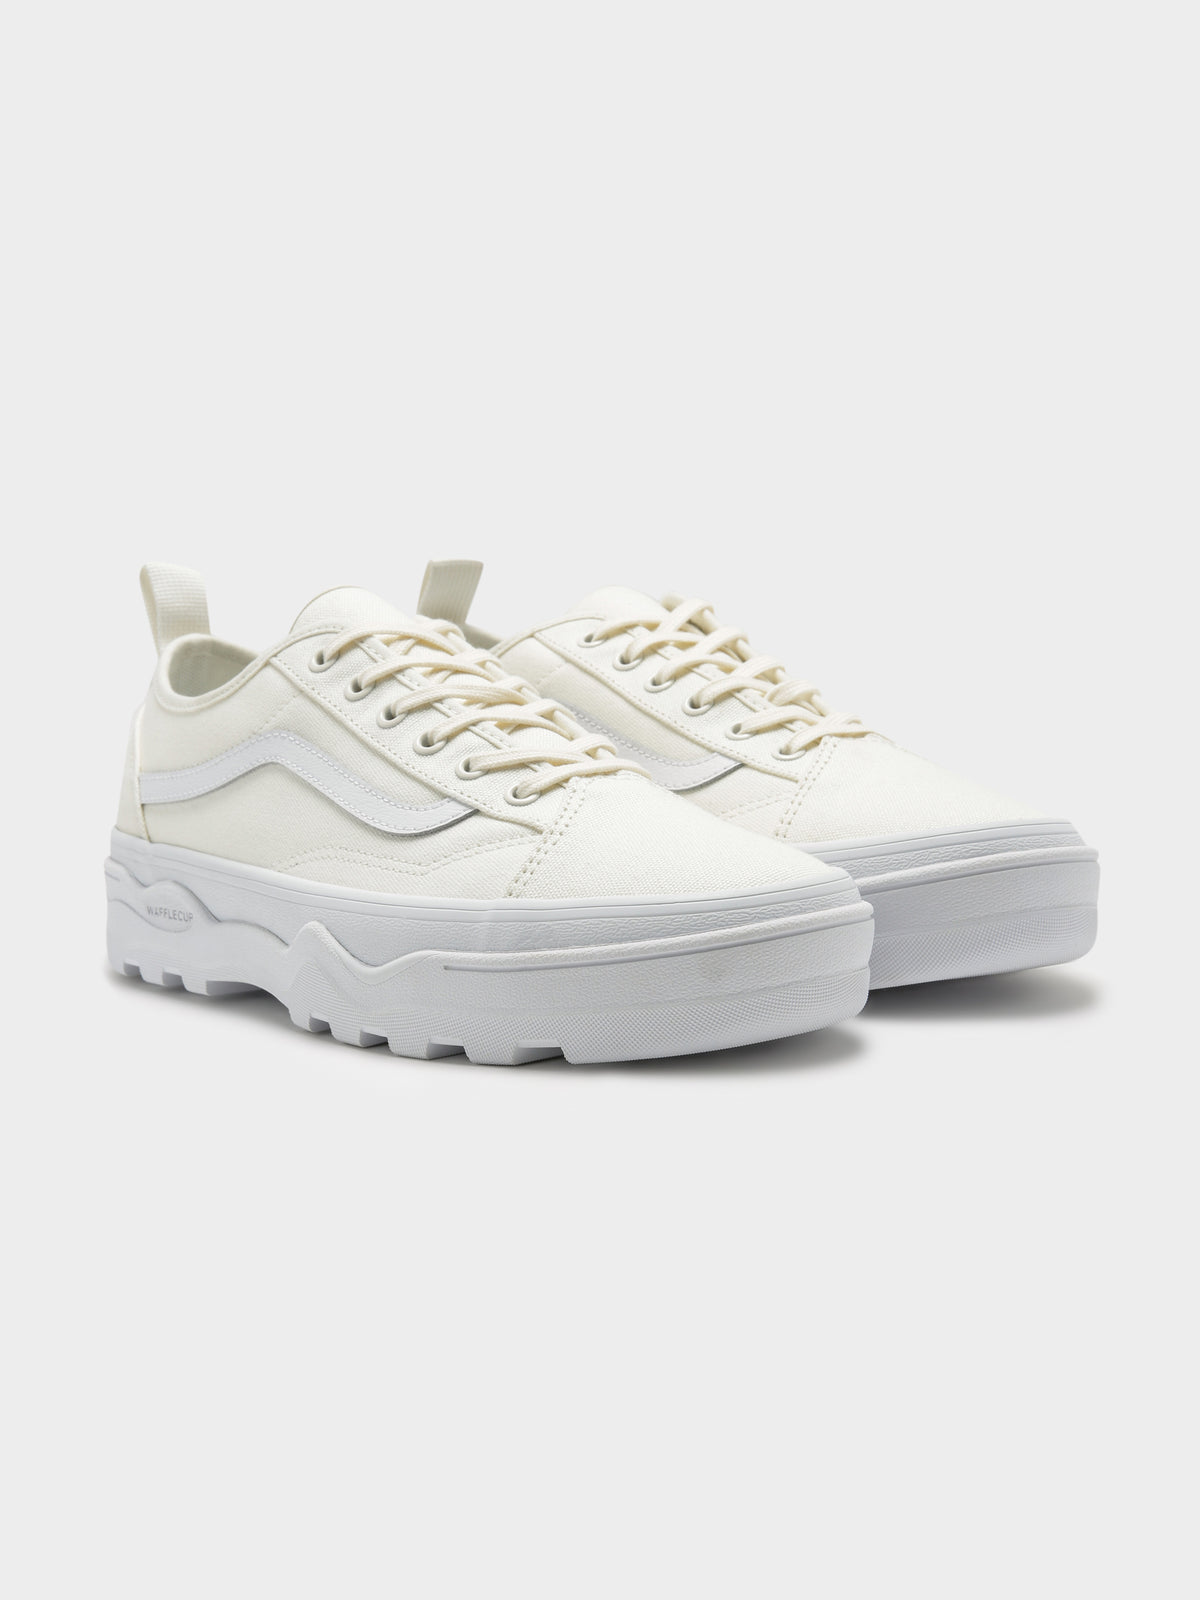 Unisex Sentry Old Skool Sneakers in Off White